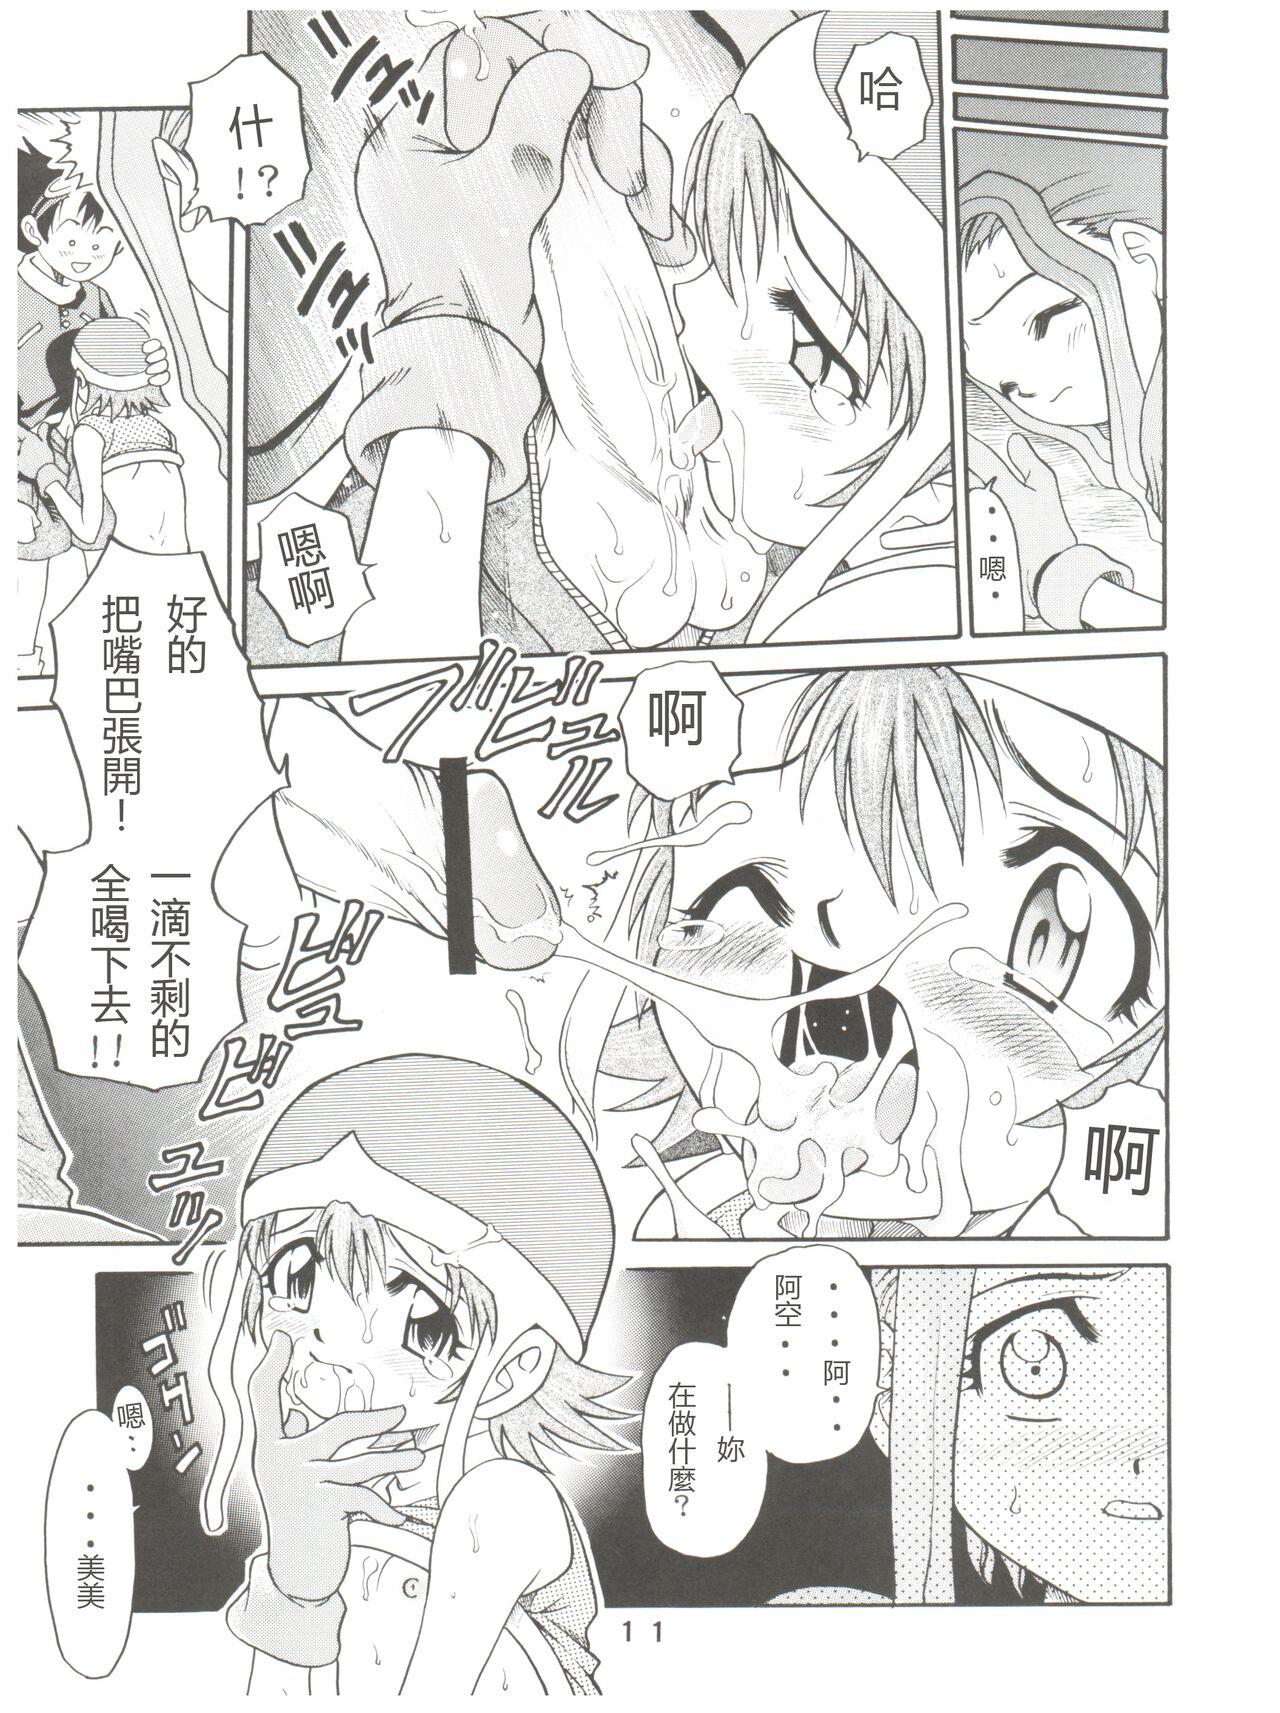 Chibola Pichuu Pikachuu Daigyakusatsu - Digimon adventure Camgirl - Page 11